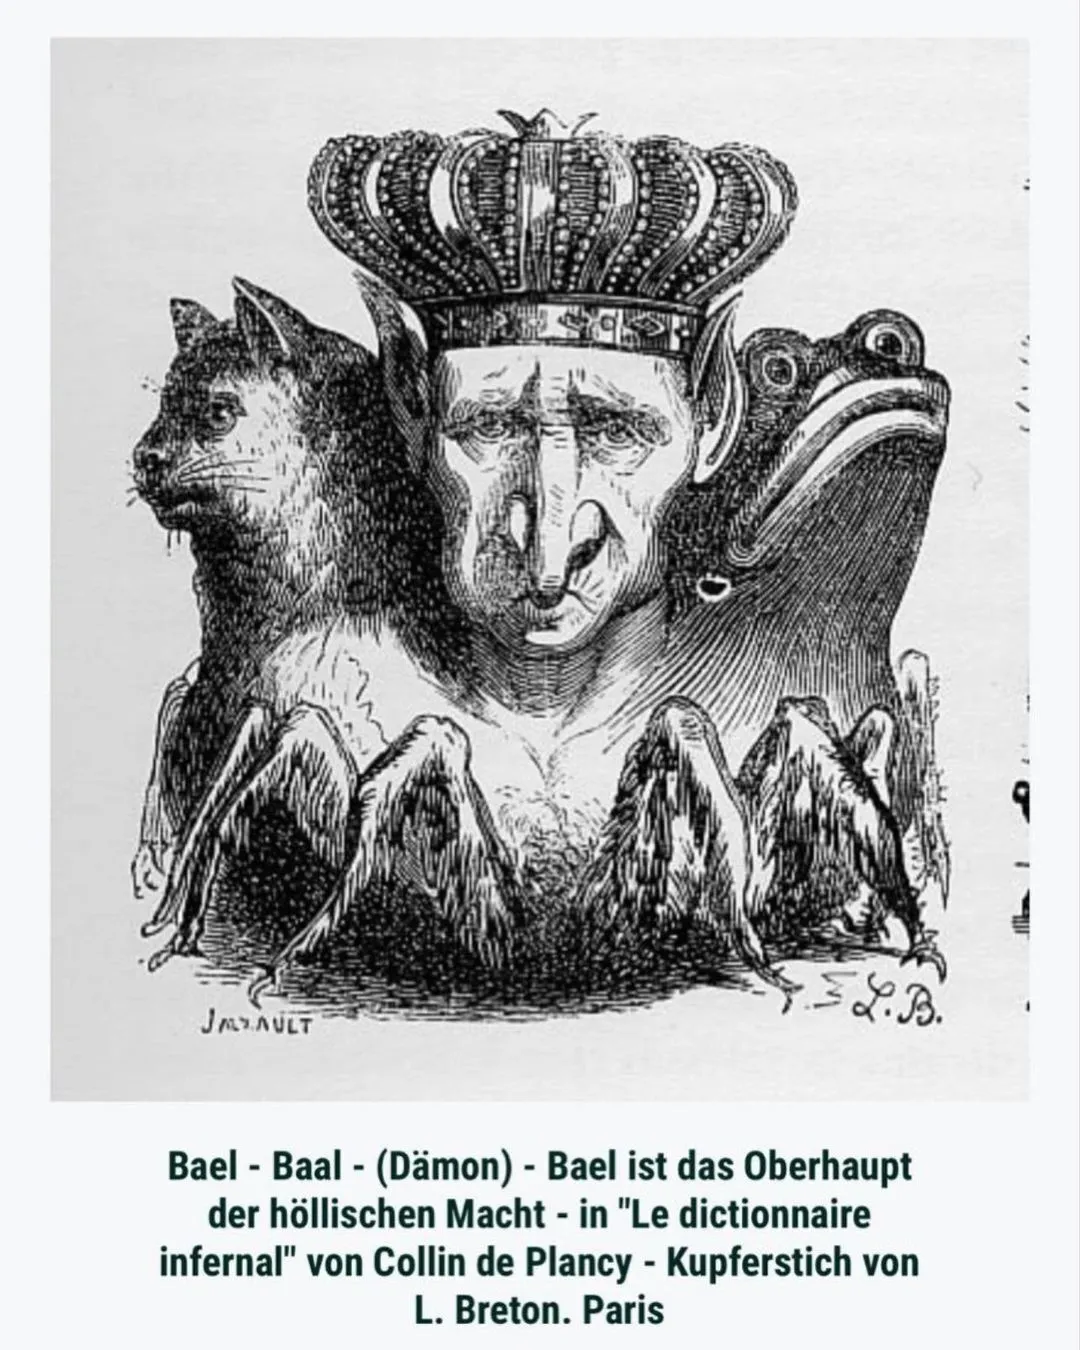 Зображення демона Баала, "Інфернальний словник", книга з демонології, 19 століття